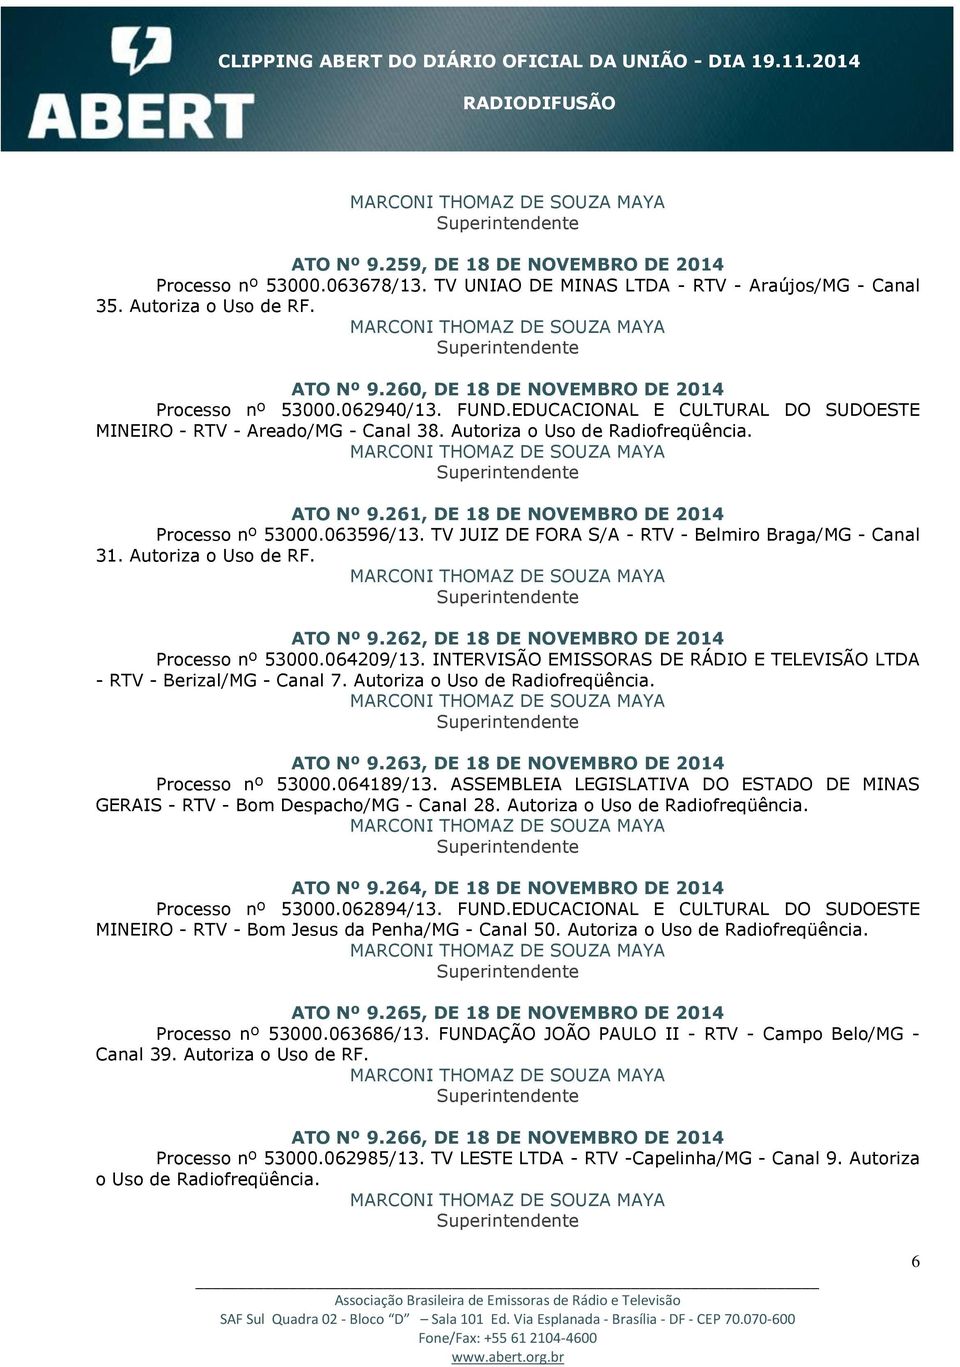 261, DE 18 DE NOVEMBRO DE 2014 Processo nº 53000.063596/13. TV JUIZ DE FORA S/A - RTV - Belmiro Braga/MG - Canal 31. Autoriza o Uso de RF. ATO Nº 9.262, DE 18 DE NOVEMBRO DE 2014 Processo nº 53000.